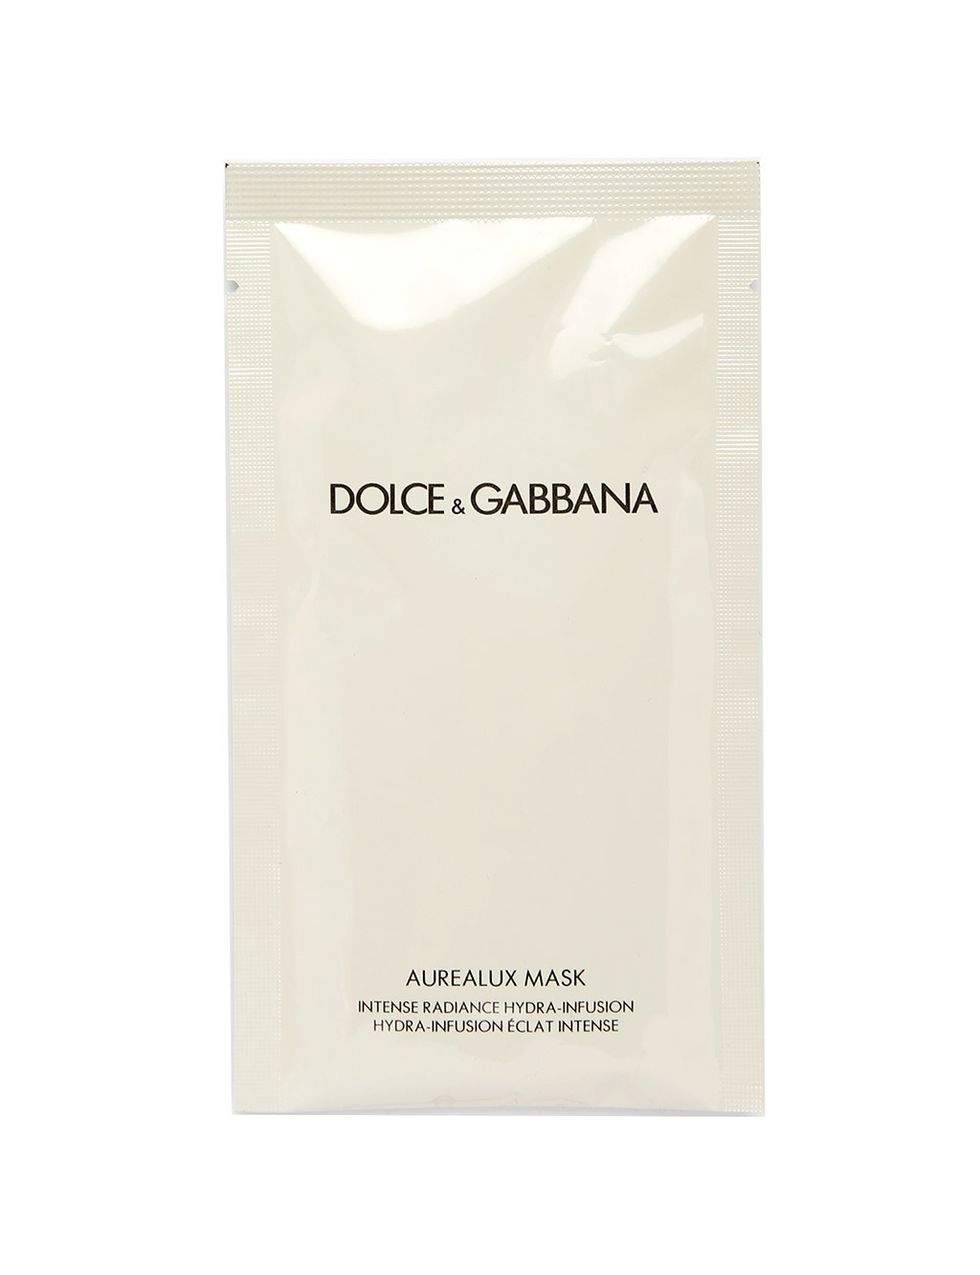 <p>'Aurealux Mask' (128,50 €/6 unidades) de&nbsp;<strong>Dolce &amp; Gabbana</strong>. Posee un tejido biotecnológico que permite que sus activos iluminadores e hidratantes penetren mucho mejor.</p>